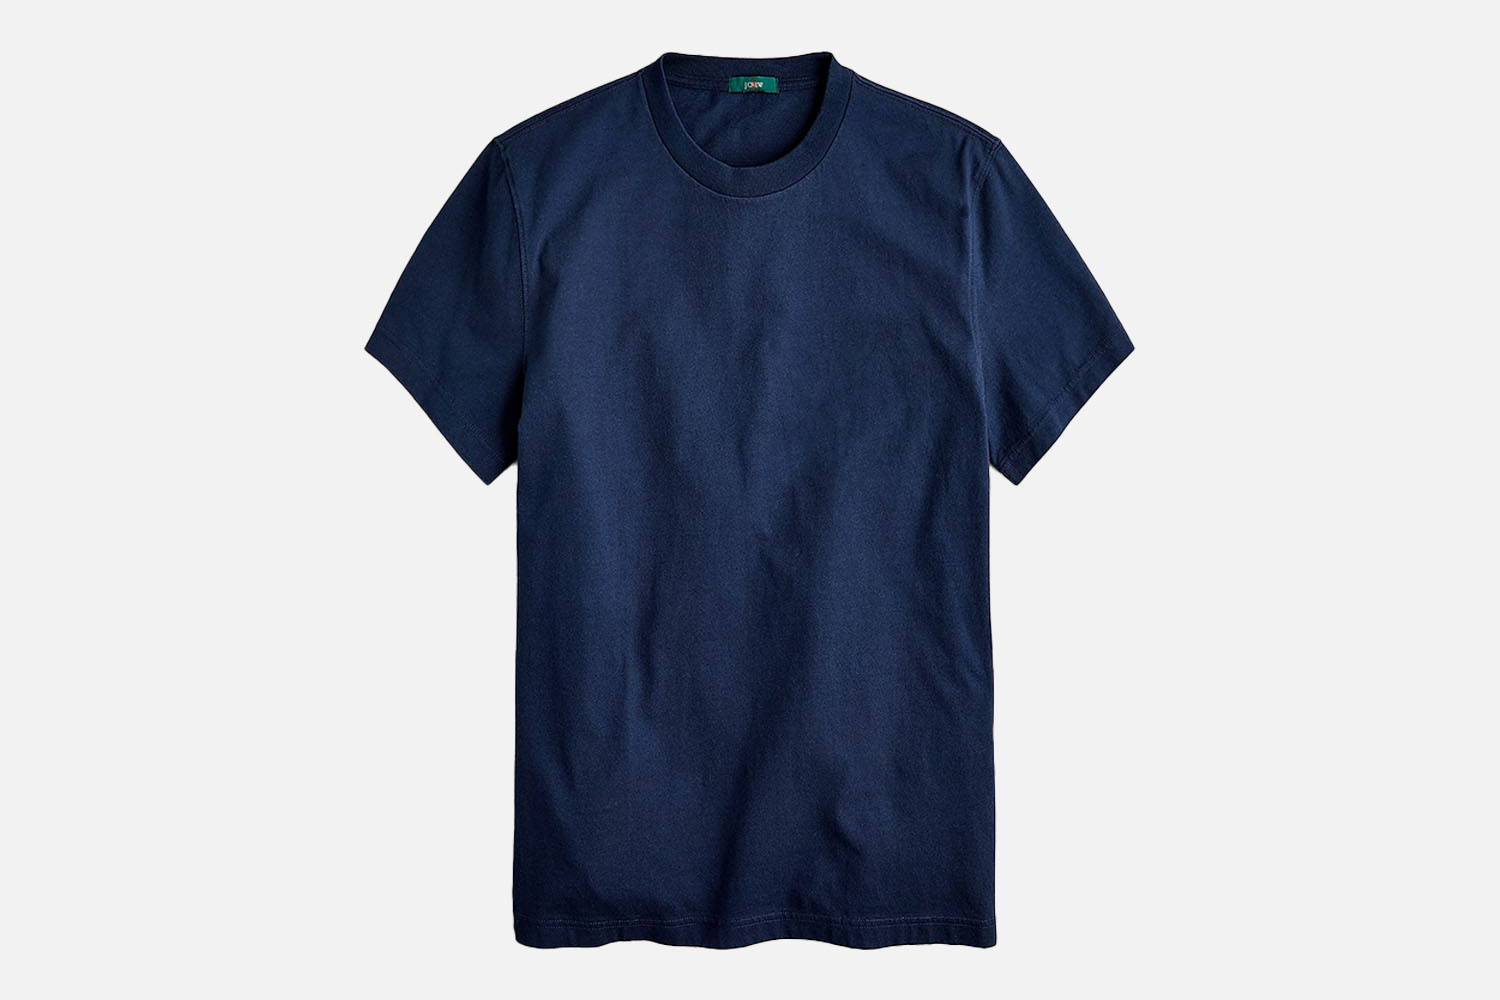 Alter Frame Champion 8 T shirt for Men Color Blue